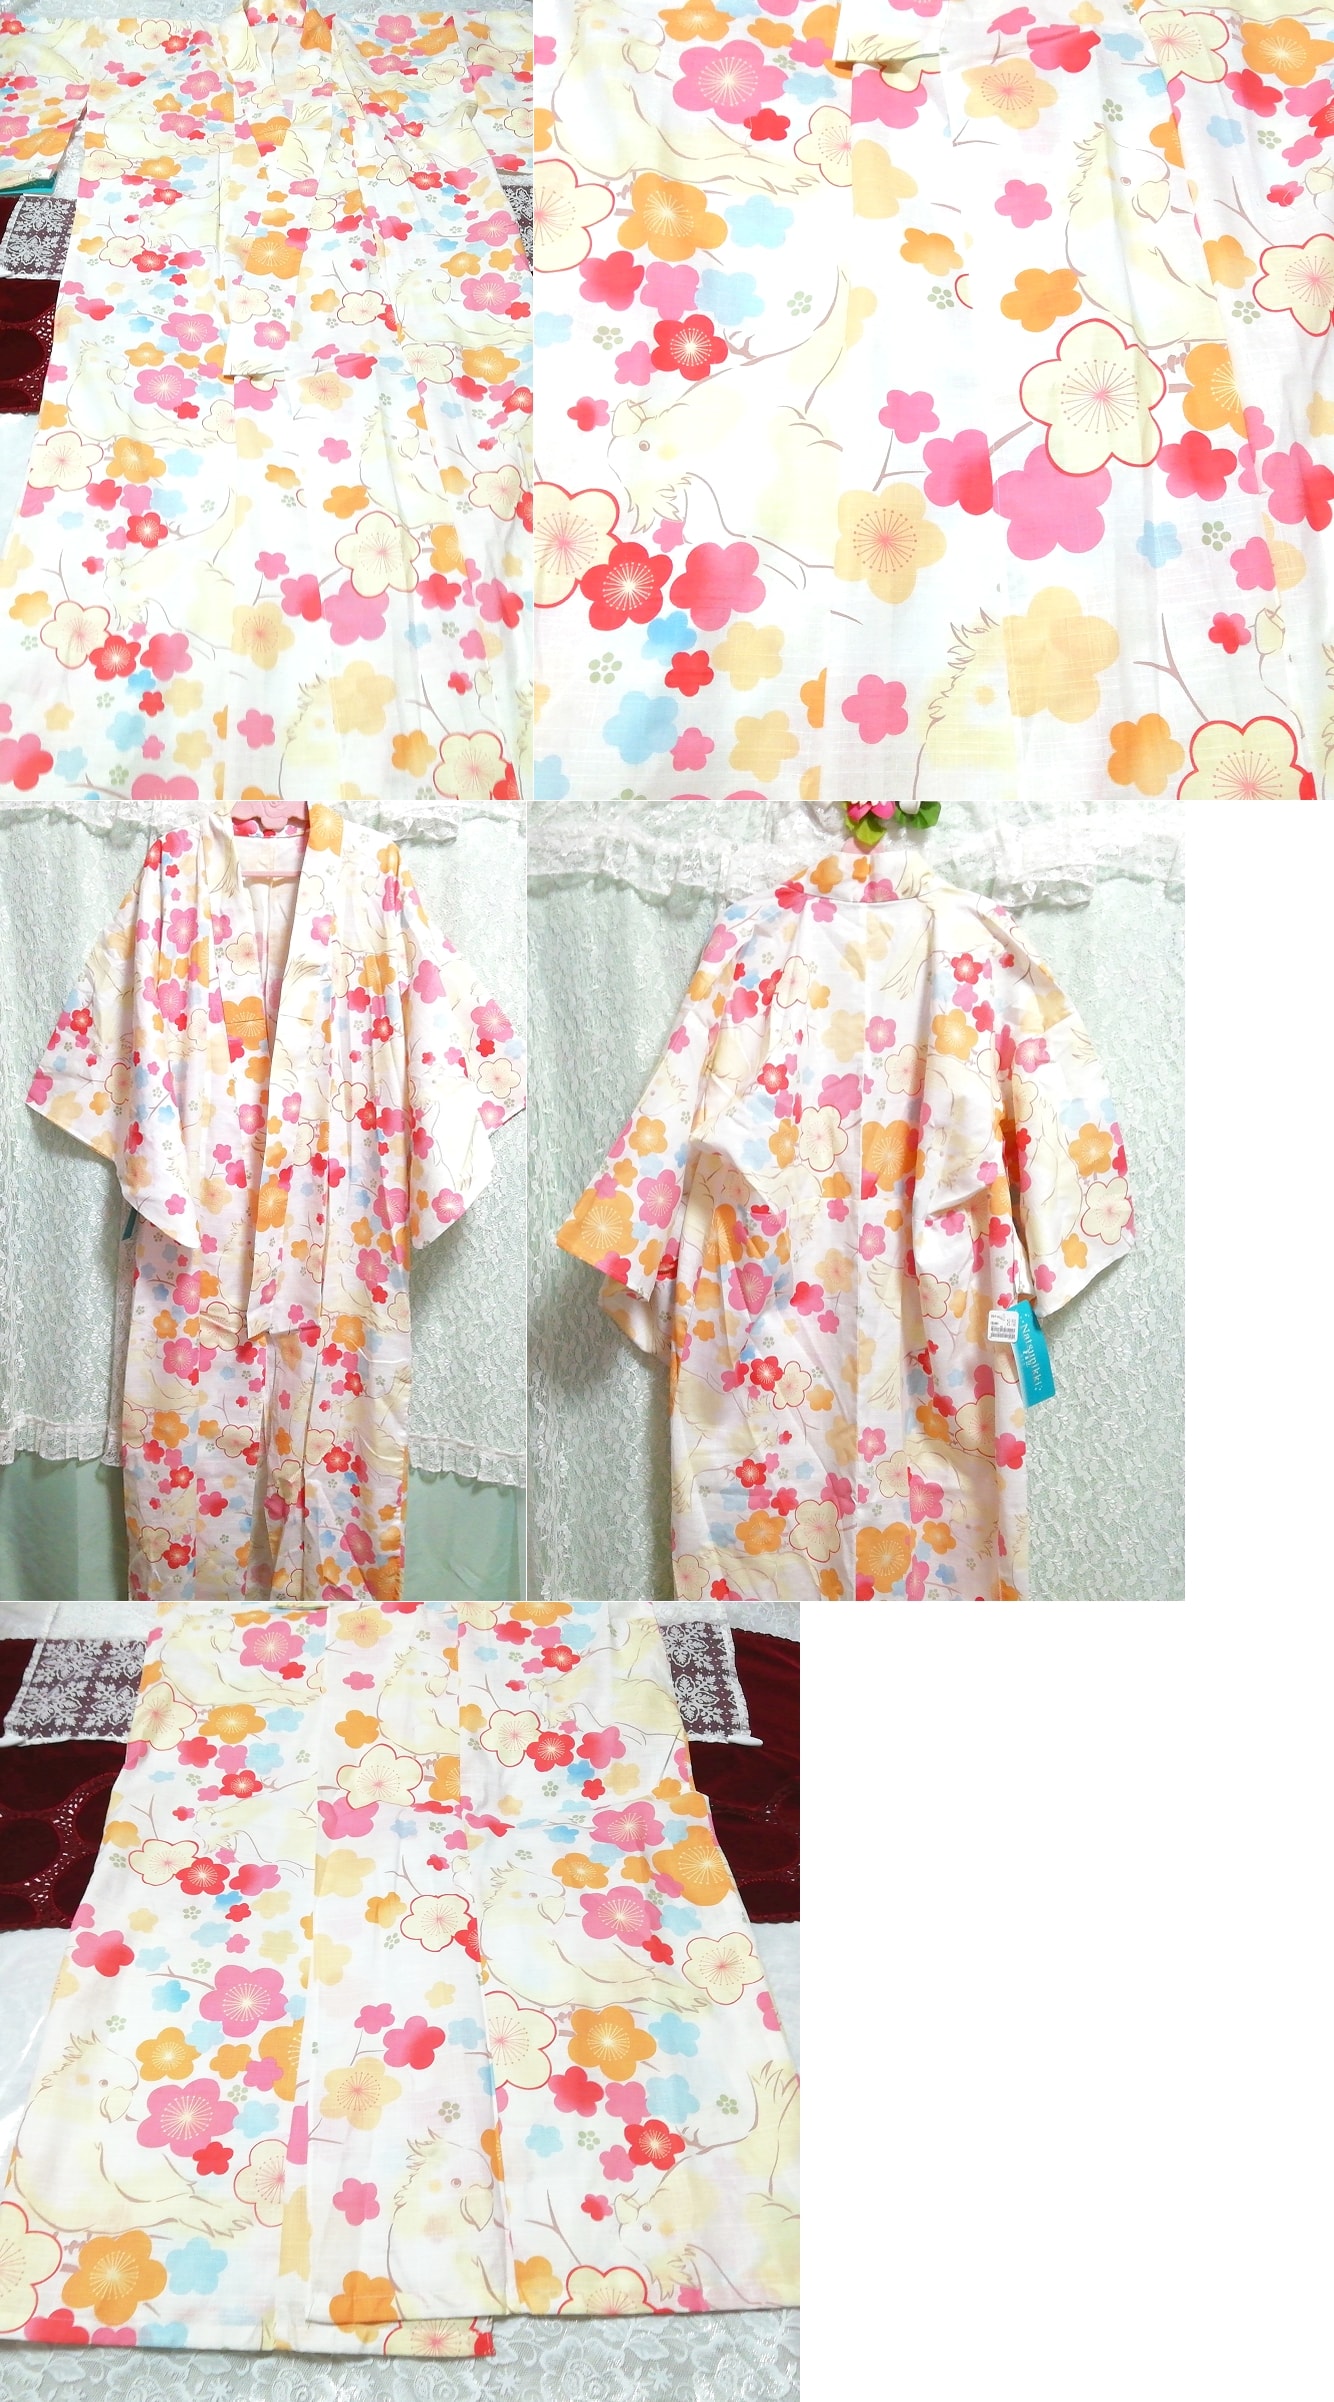 花柄鳥絵浴衣ゆかた/和服 Flower pattern bird picture yukata / Japanese clothes, 浴衣, 浴衣(単体), その他